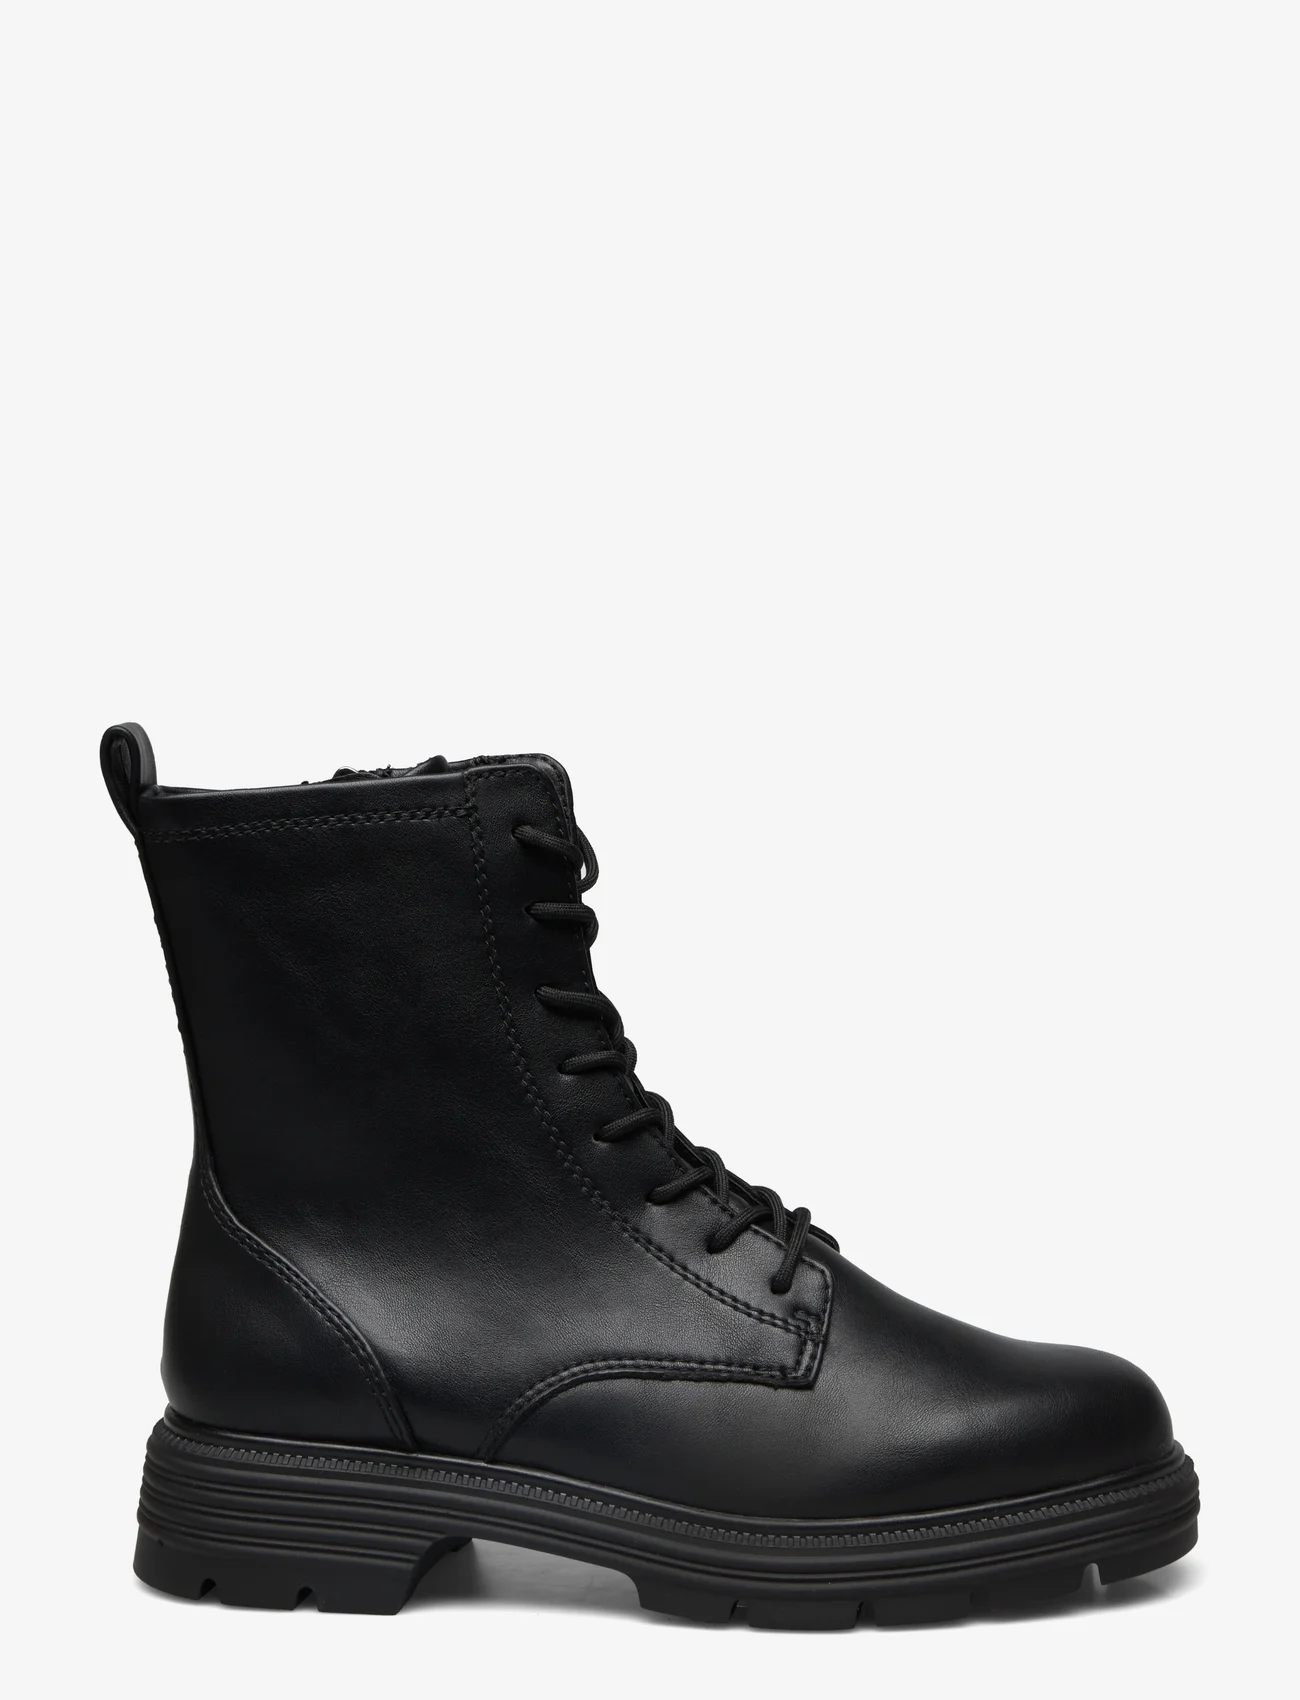 Tamaris - Women Boots - veterlaarzen - black - 1